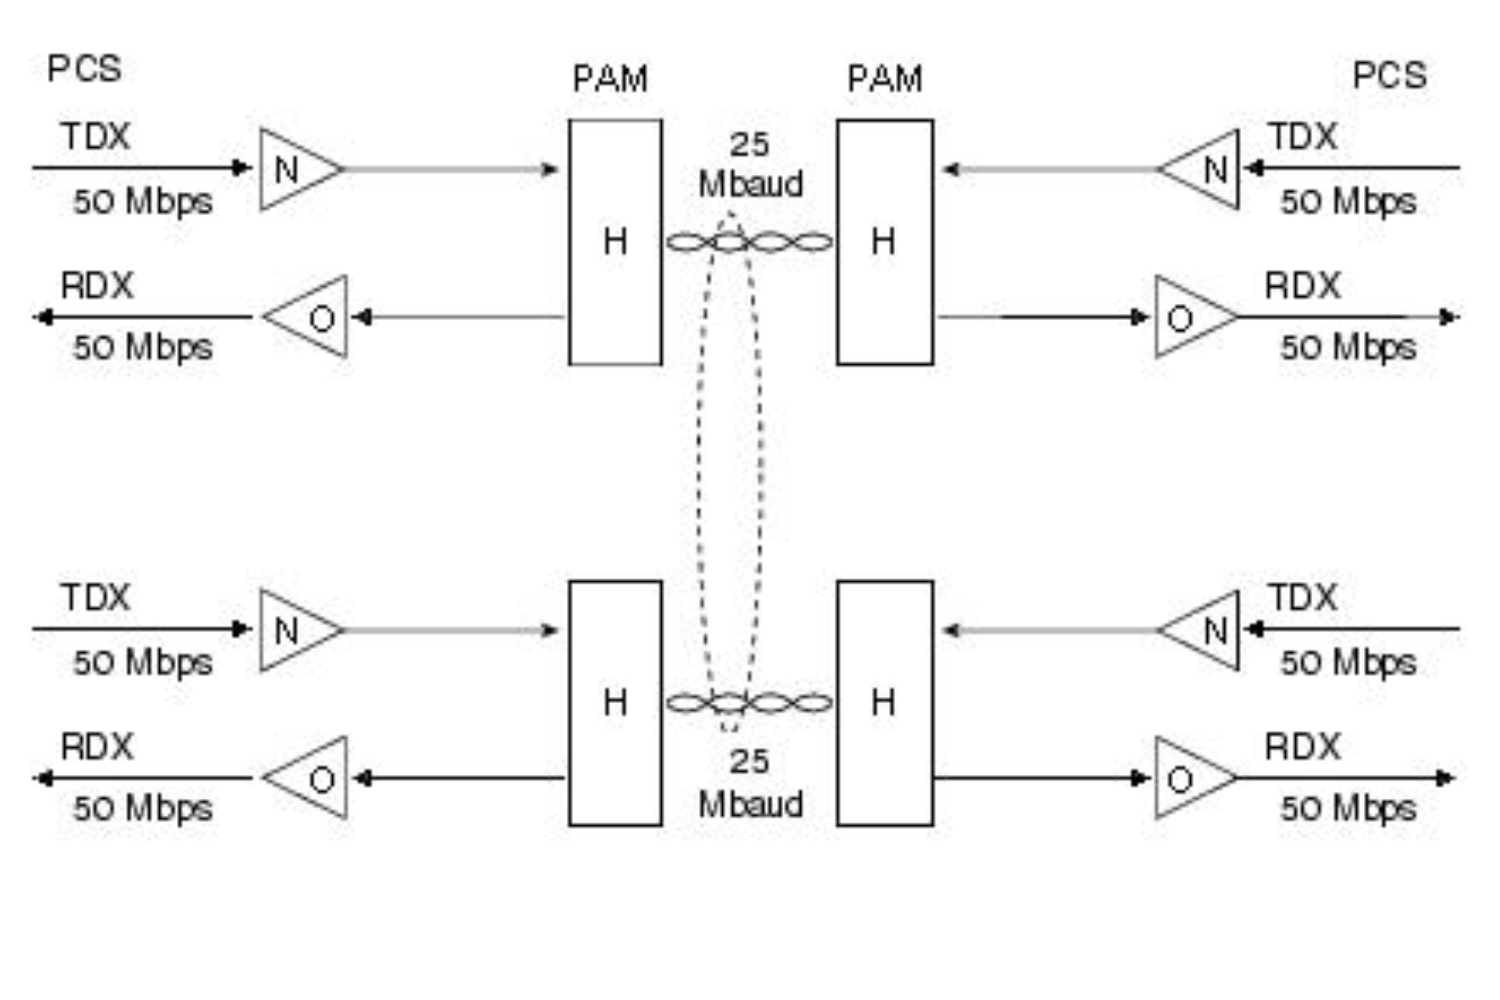 100BASE-T2, chuẩn IEEE 802.3y, dữ liệu được truyền qua hai cặp đồng